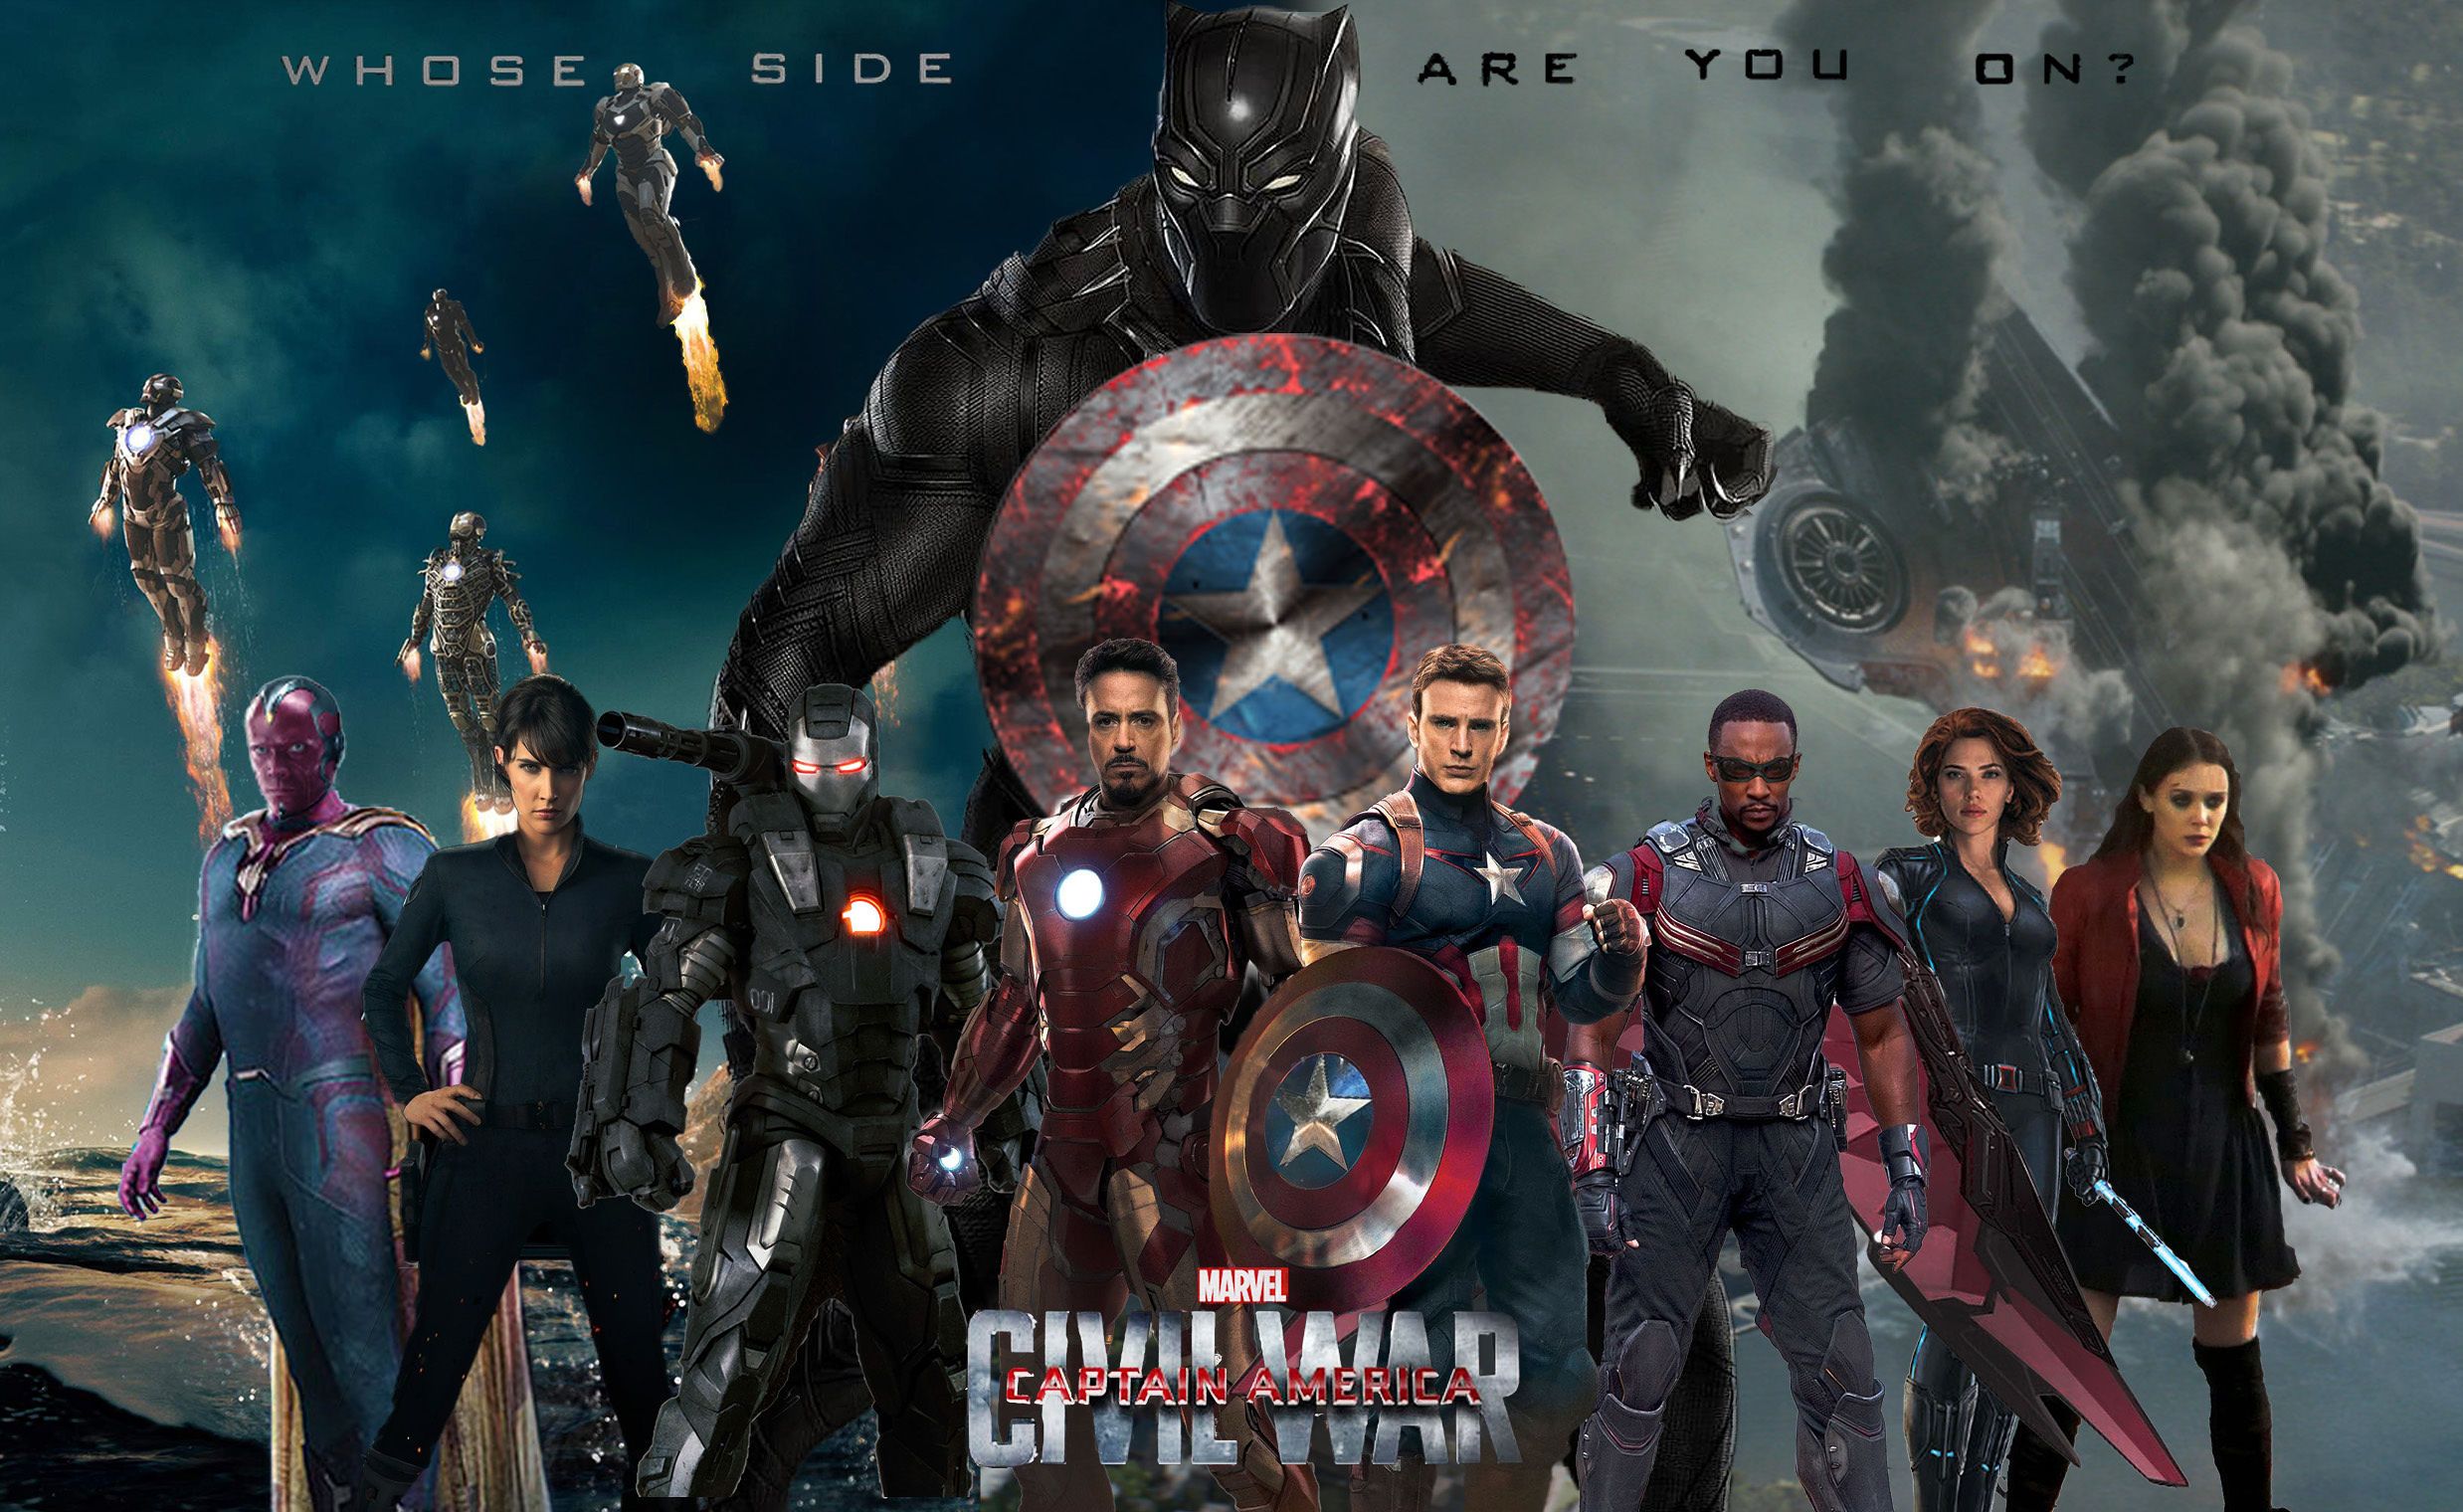 17-فیلم کاپیتان آمریکا: جنگ داخلی 2016 Captain America: Civil War: بازهم اثری گران قیمت از آنتونی و جو روسو!